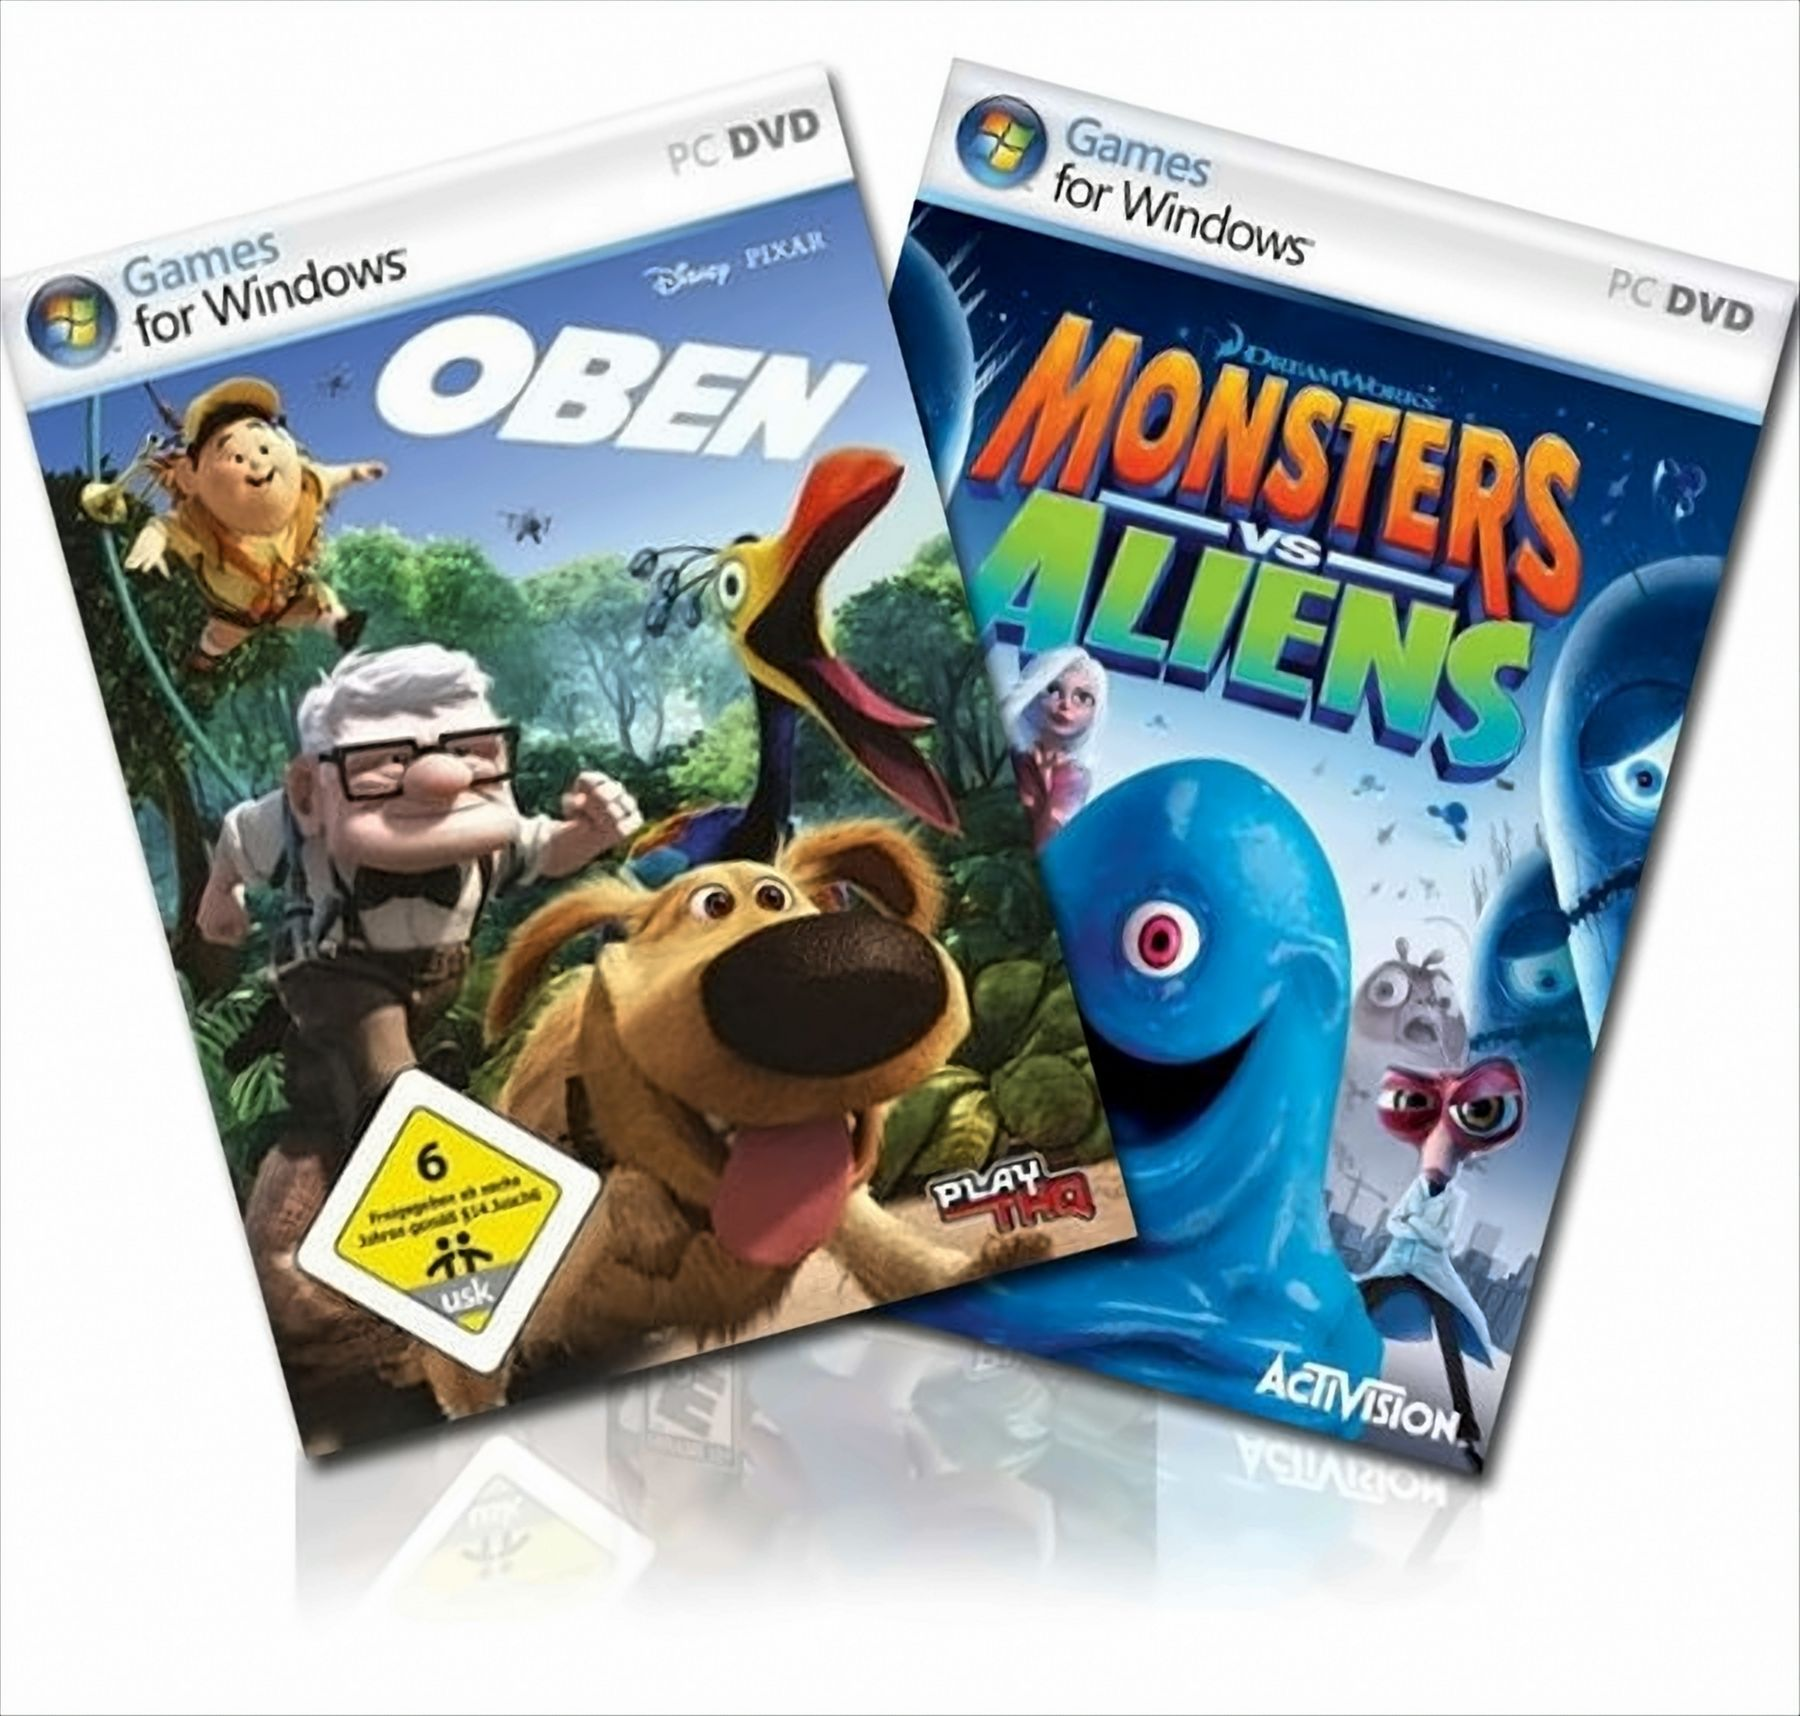 Oben & Monsters vs Aliens [PC] - (Bundle)